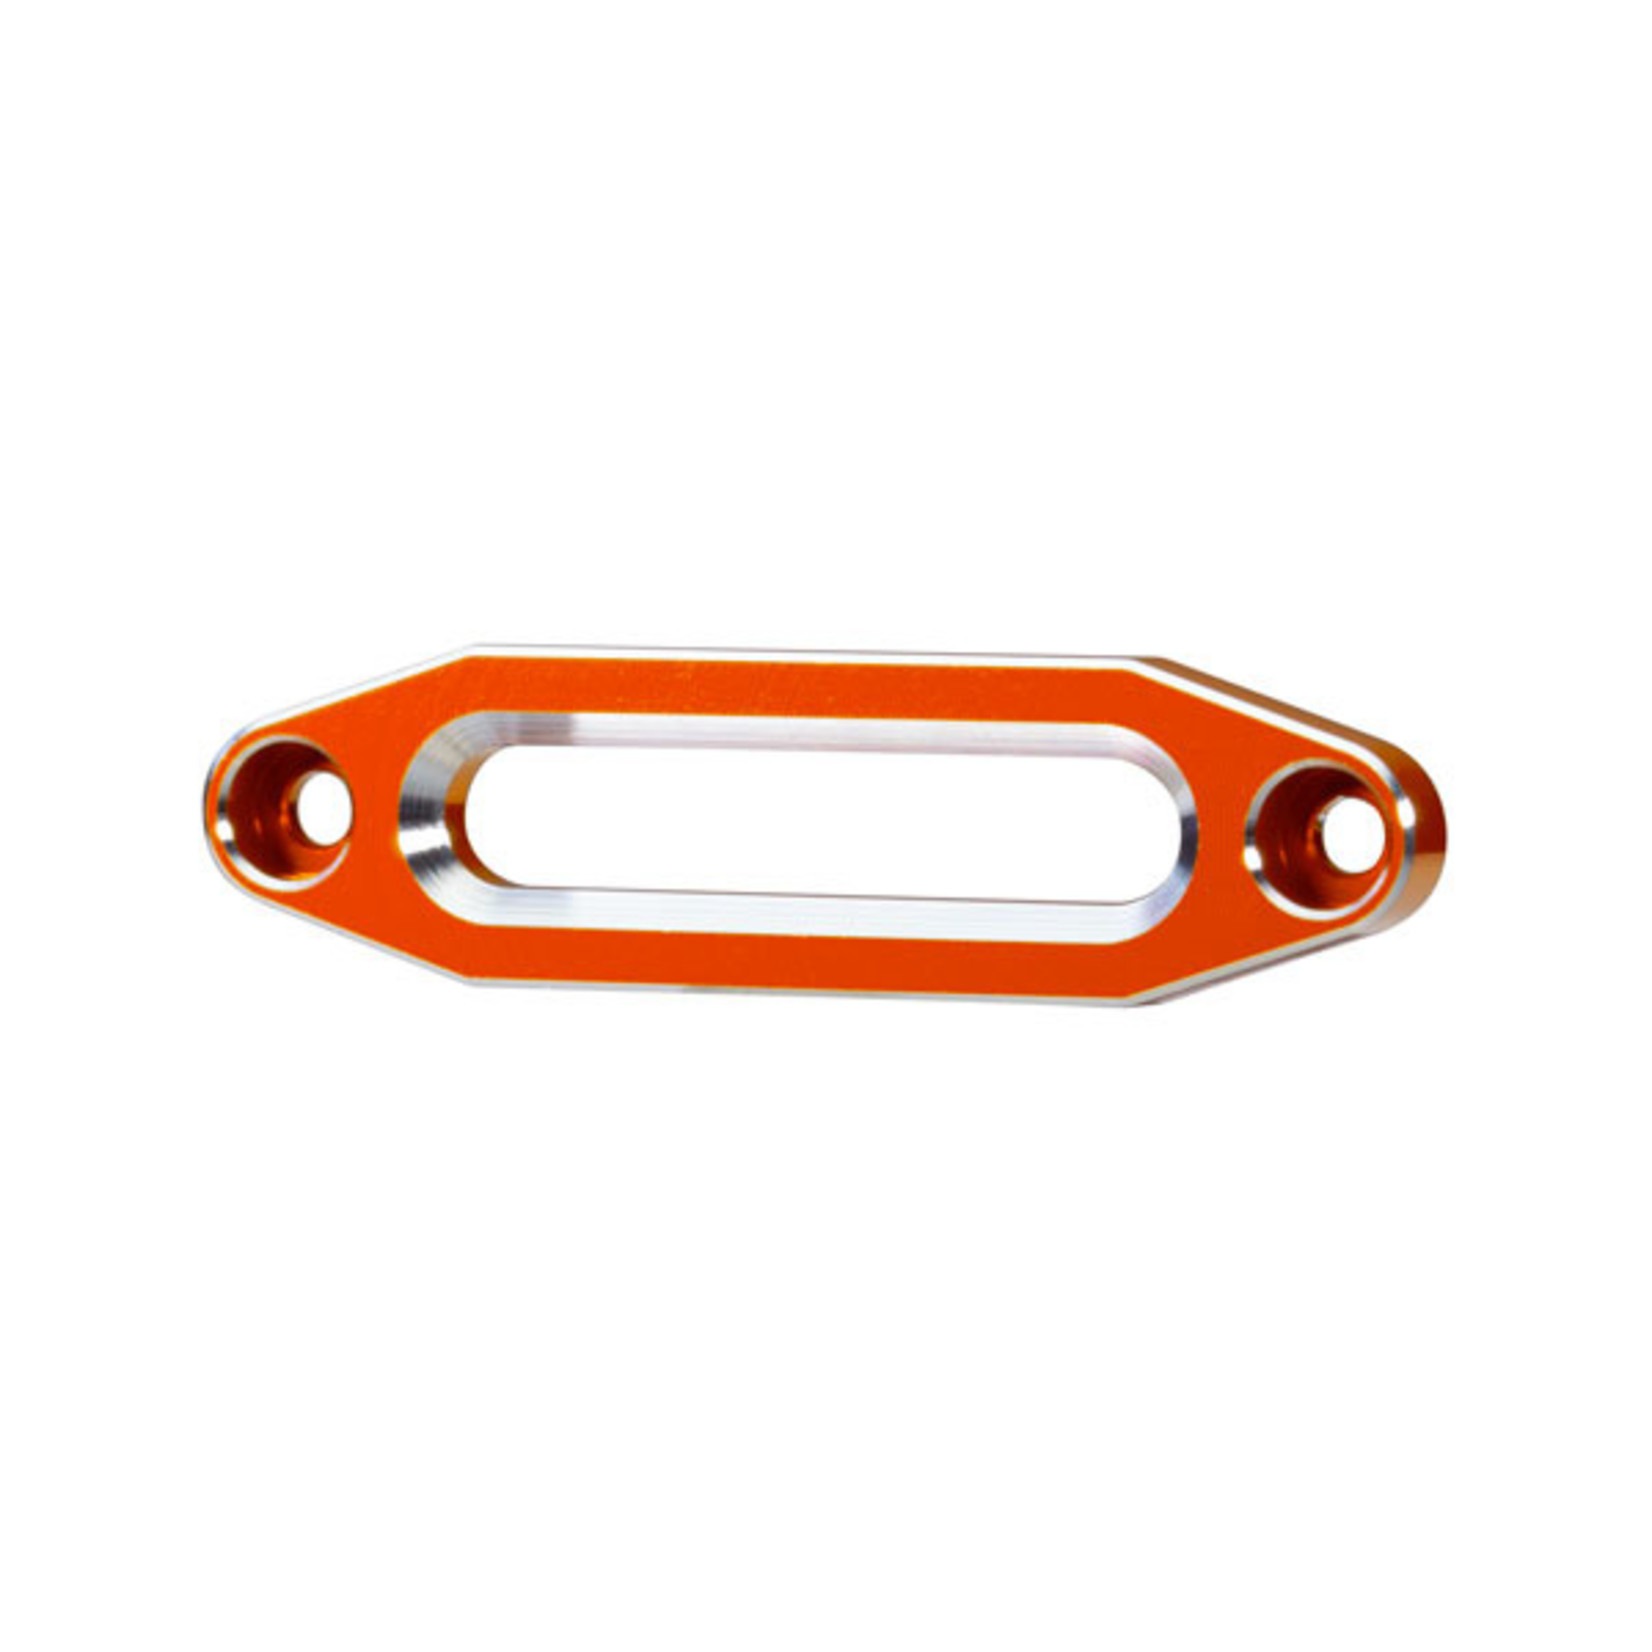 Traxxas 8870T - Fairlead, winch, aluminum (orange-anodized